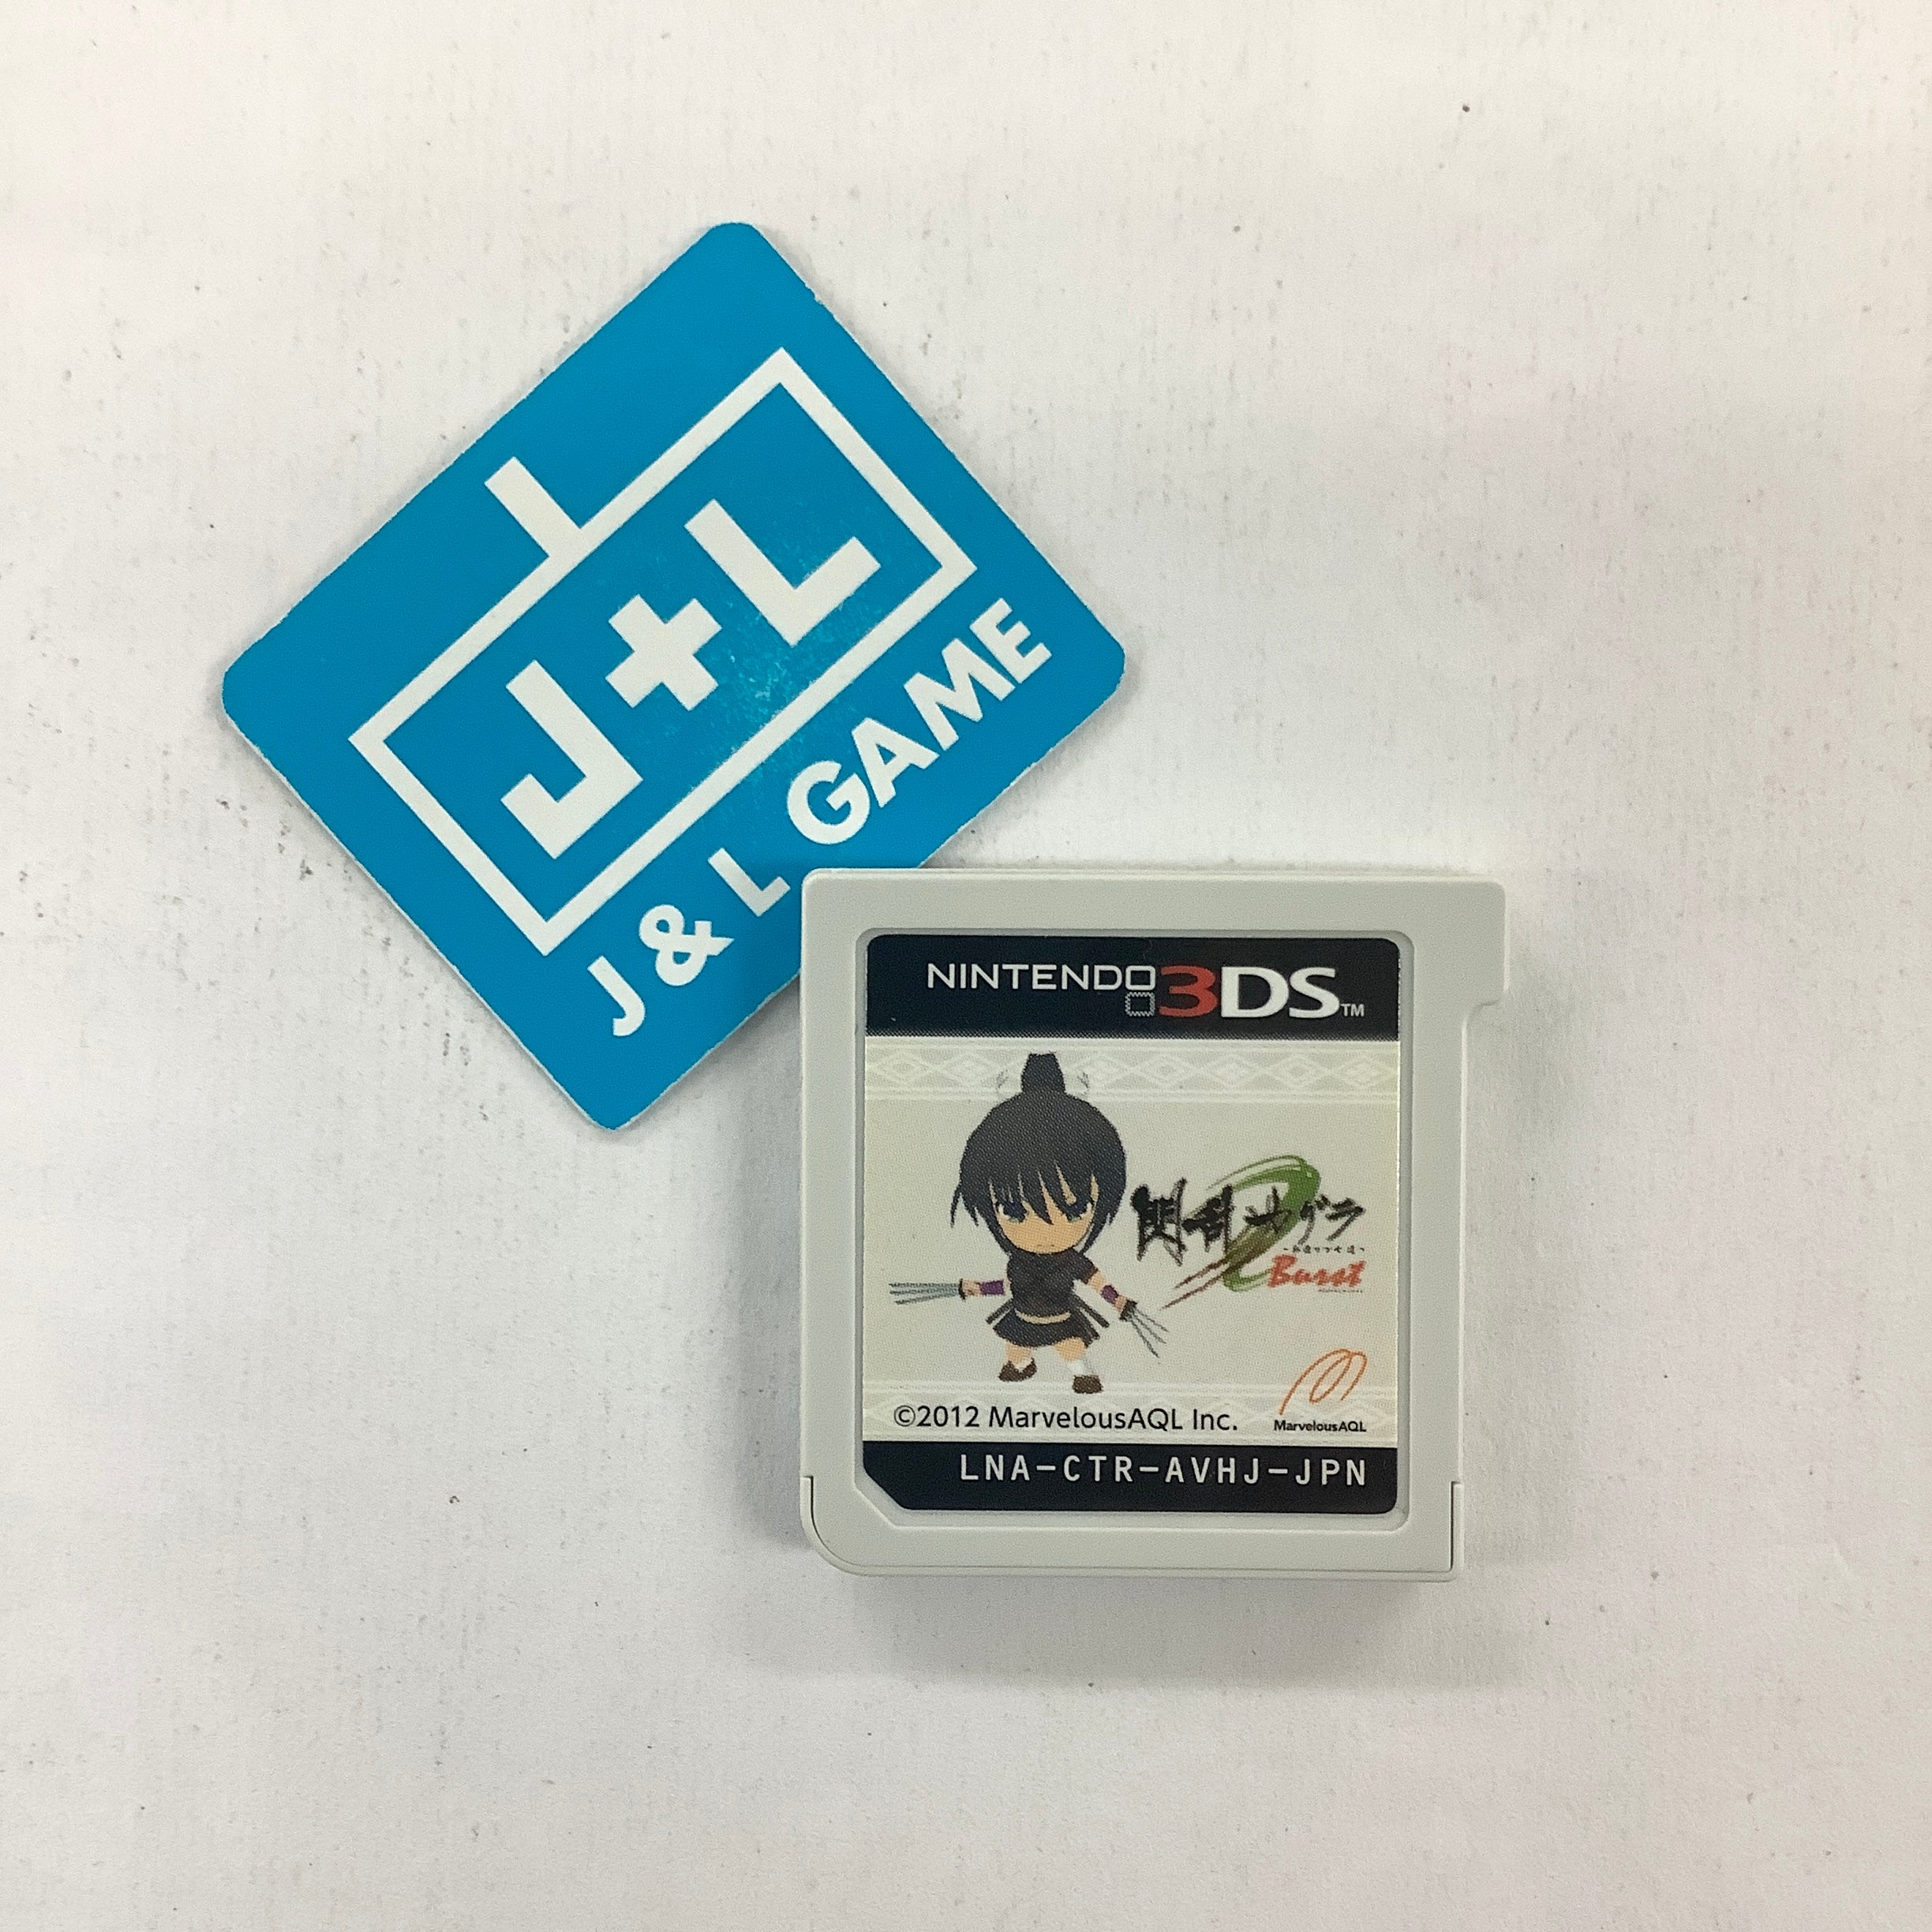 Senran Kagura Burst: Guren no Shoujotachi - Nintendo 3DS [Pre-Owned] (Japanese Import) Video Games Marvelous AQL   